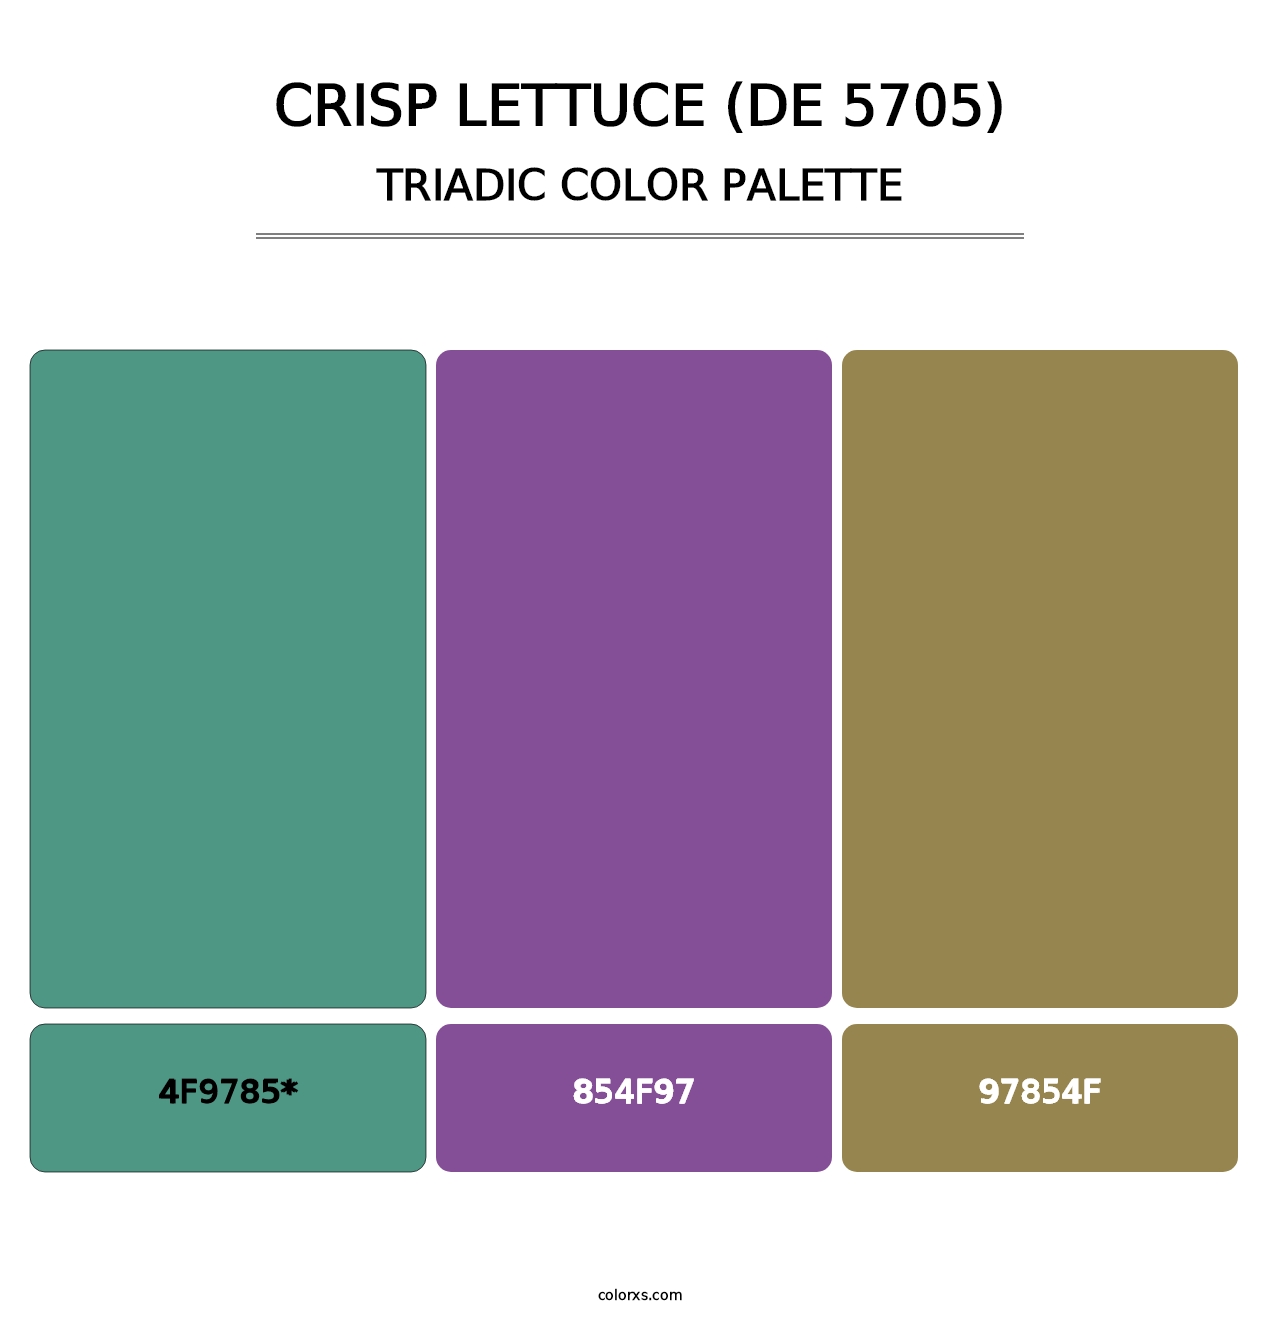 Crisp Lettuce (DE 5705) - Triadic Color Palette